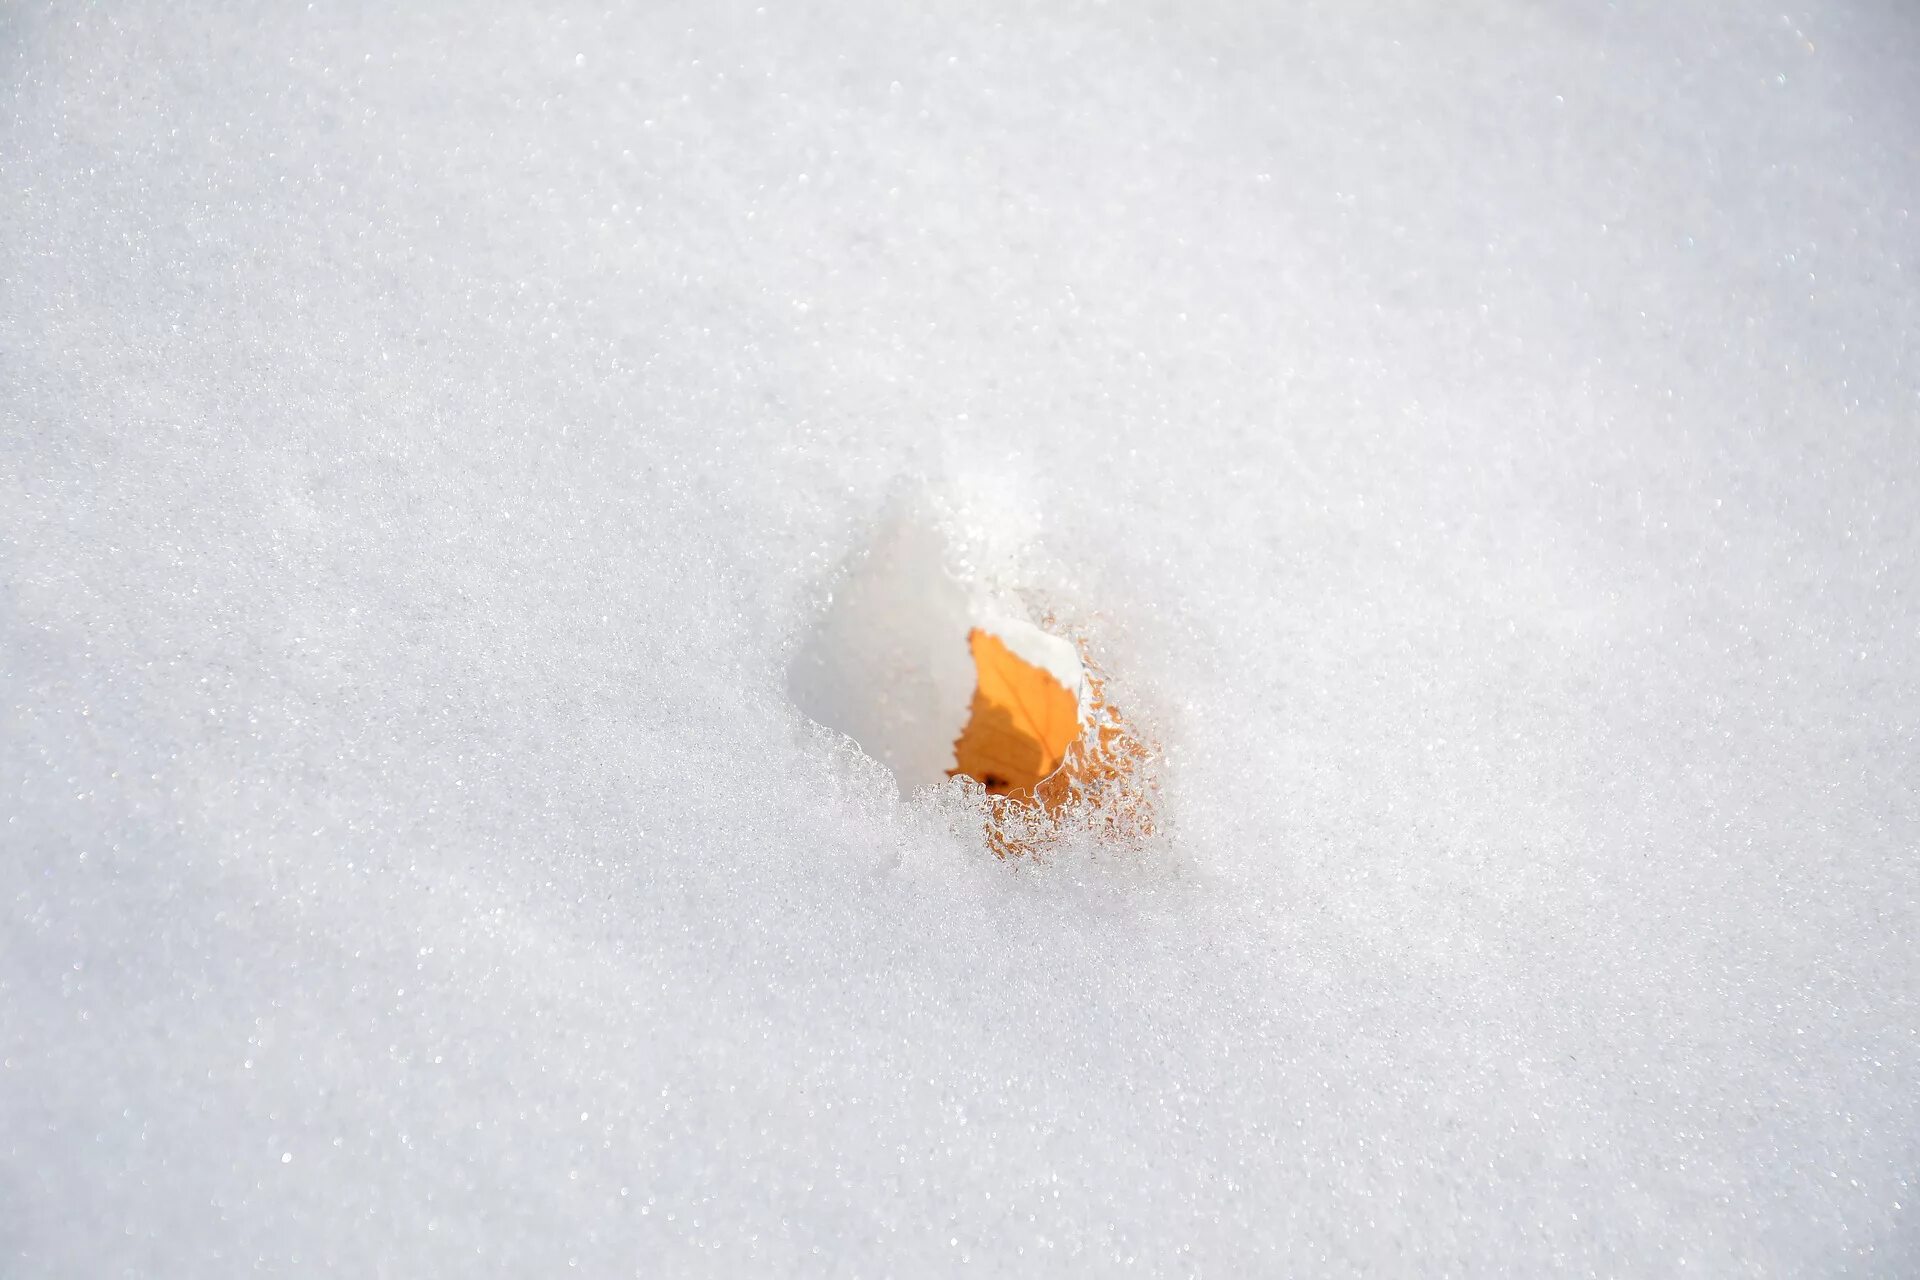 Корка снега. Наст на снегу. Ледяная корочка на снегу. Листья в снегу. Заледеневшая корка на снегу после короткой оттепели